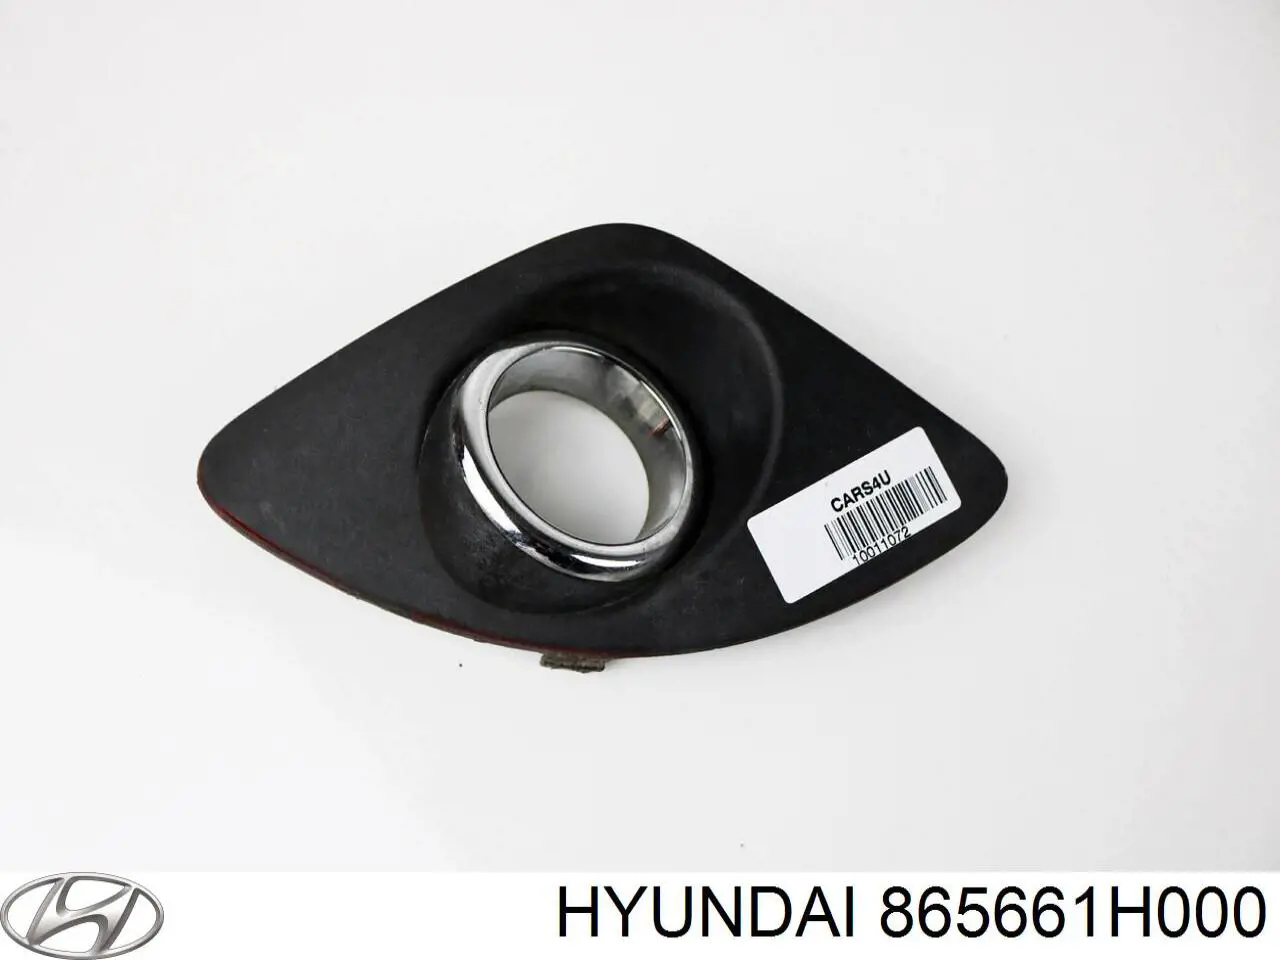 865661H000 Hyundai/Kia rejilla de antinieblas delantera derecha